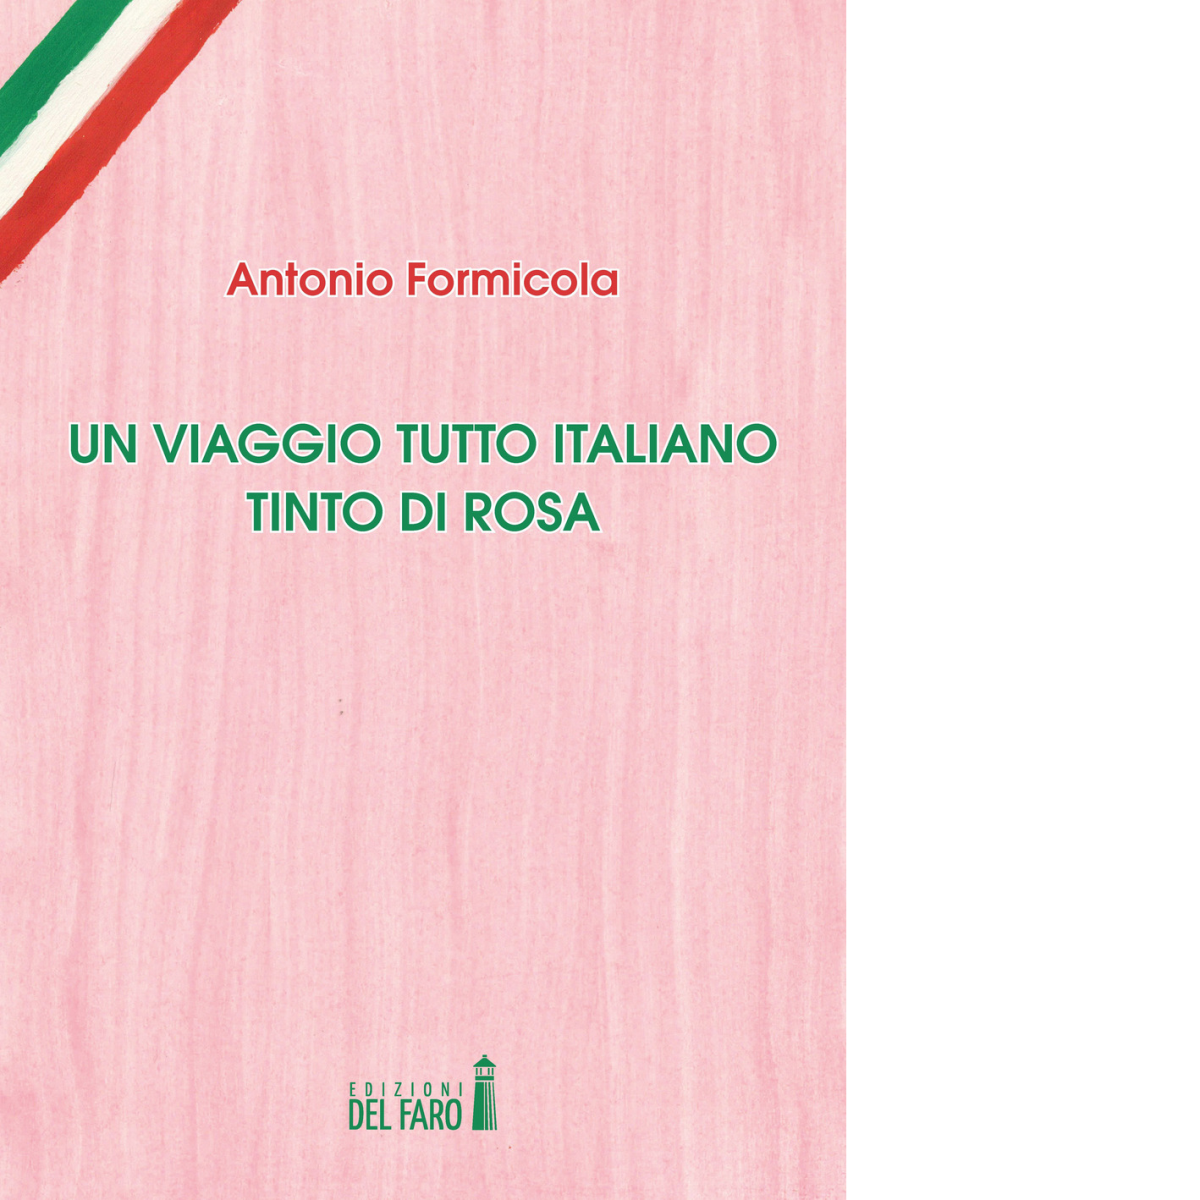 Un viaggio tutto italiano tinto di rosa di Antonio Formicola - Del Faro, 2017